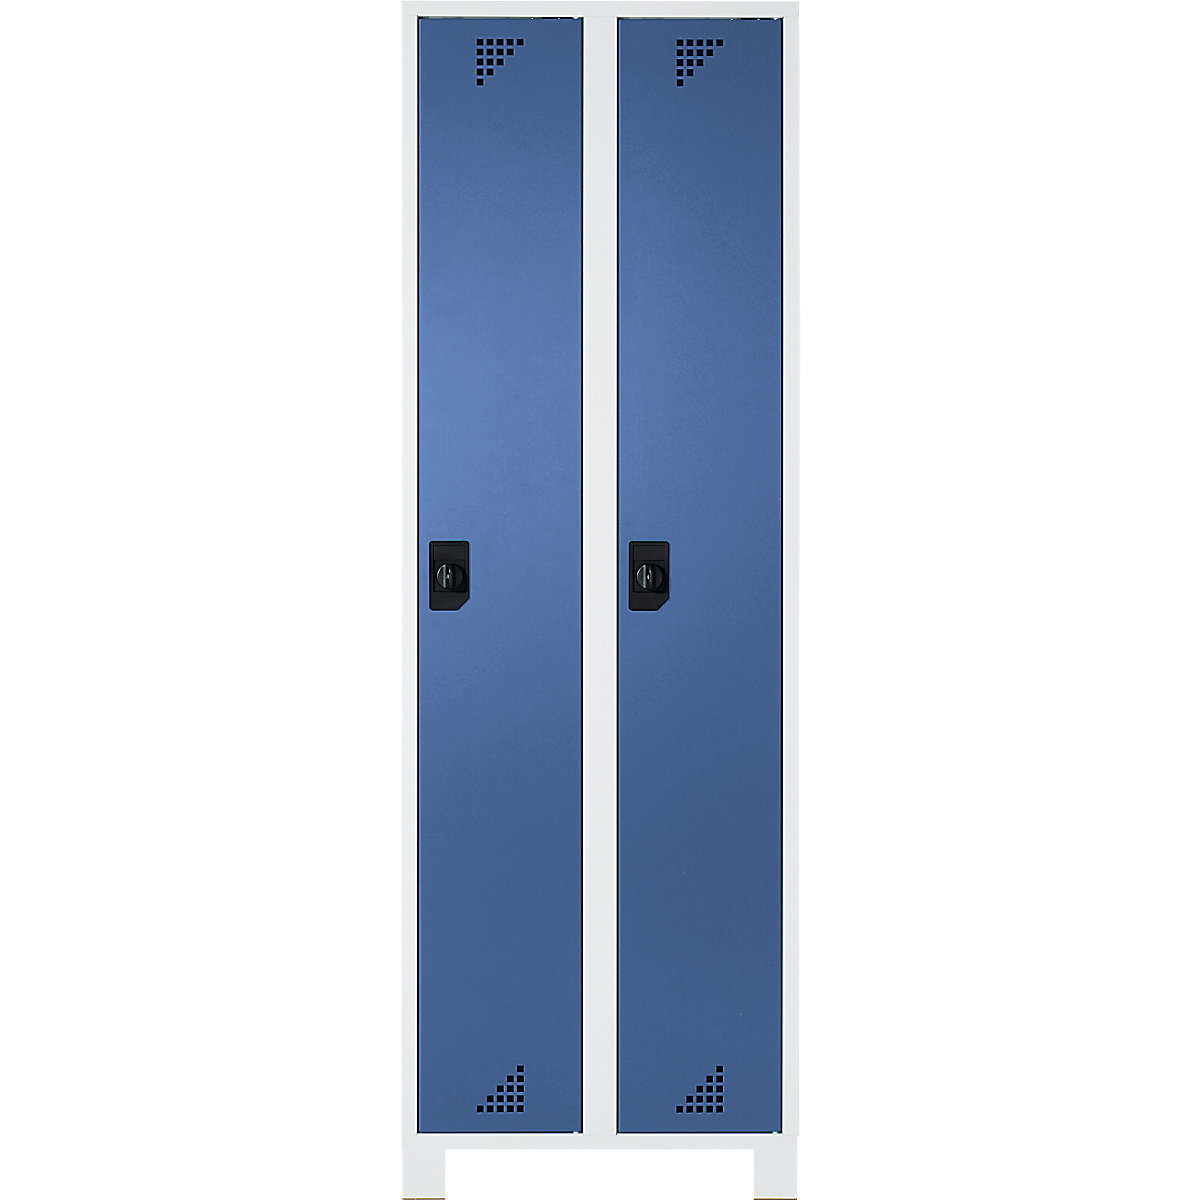 Öltözőszekrény és többfunkciós szekrény – eurokraft pro, fülkemagasság 1695 mm, 2 fülke, szélesség 600 mm, világosszürke váz, ragyogó kék ajtók-6